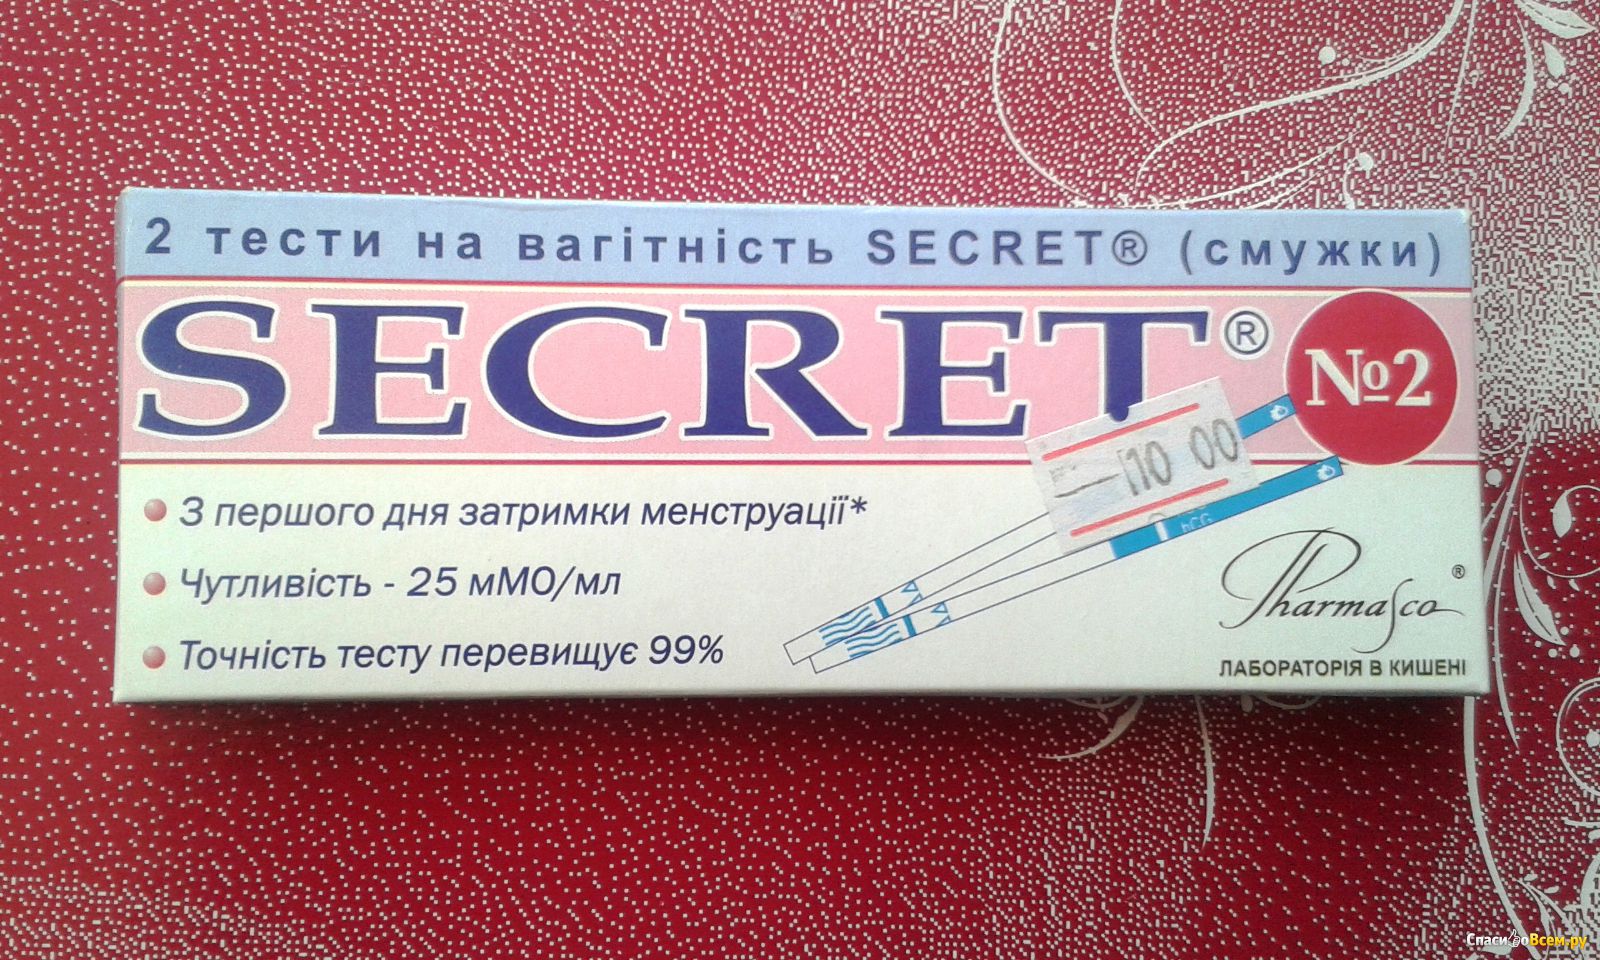 Secret data. Тест на беременность Secret. Тест на беременность Secret STM. Secret тест для беременности STM определения. Тест на беременность Secret отзывы.